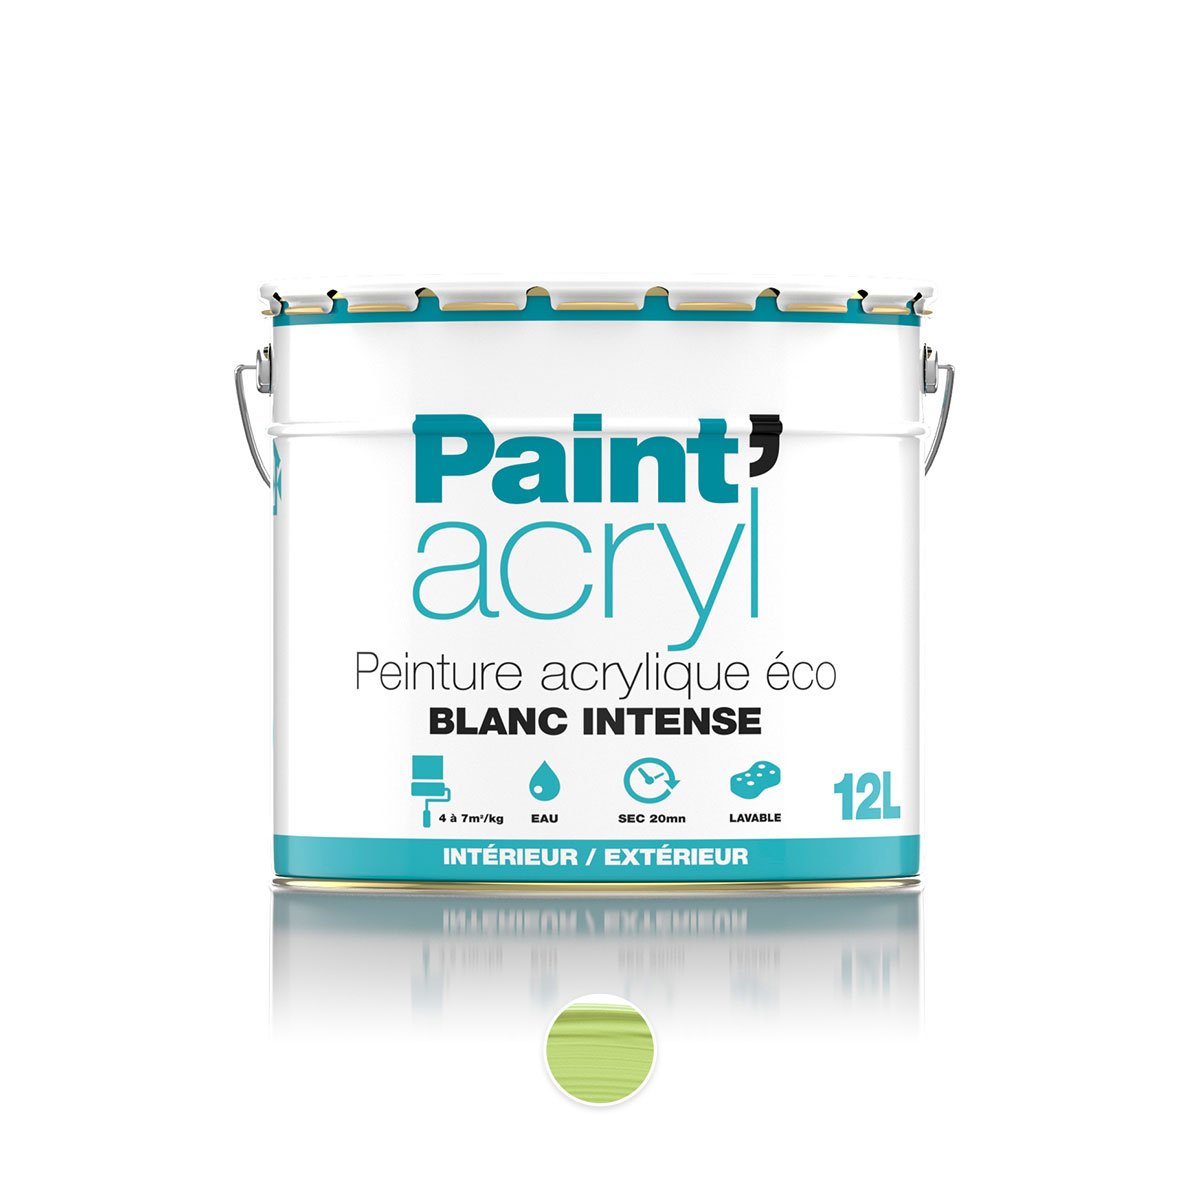 Paint'acryl Peinture acrylique éco 12L